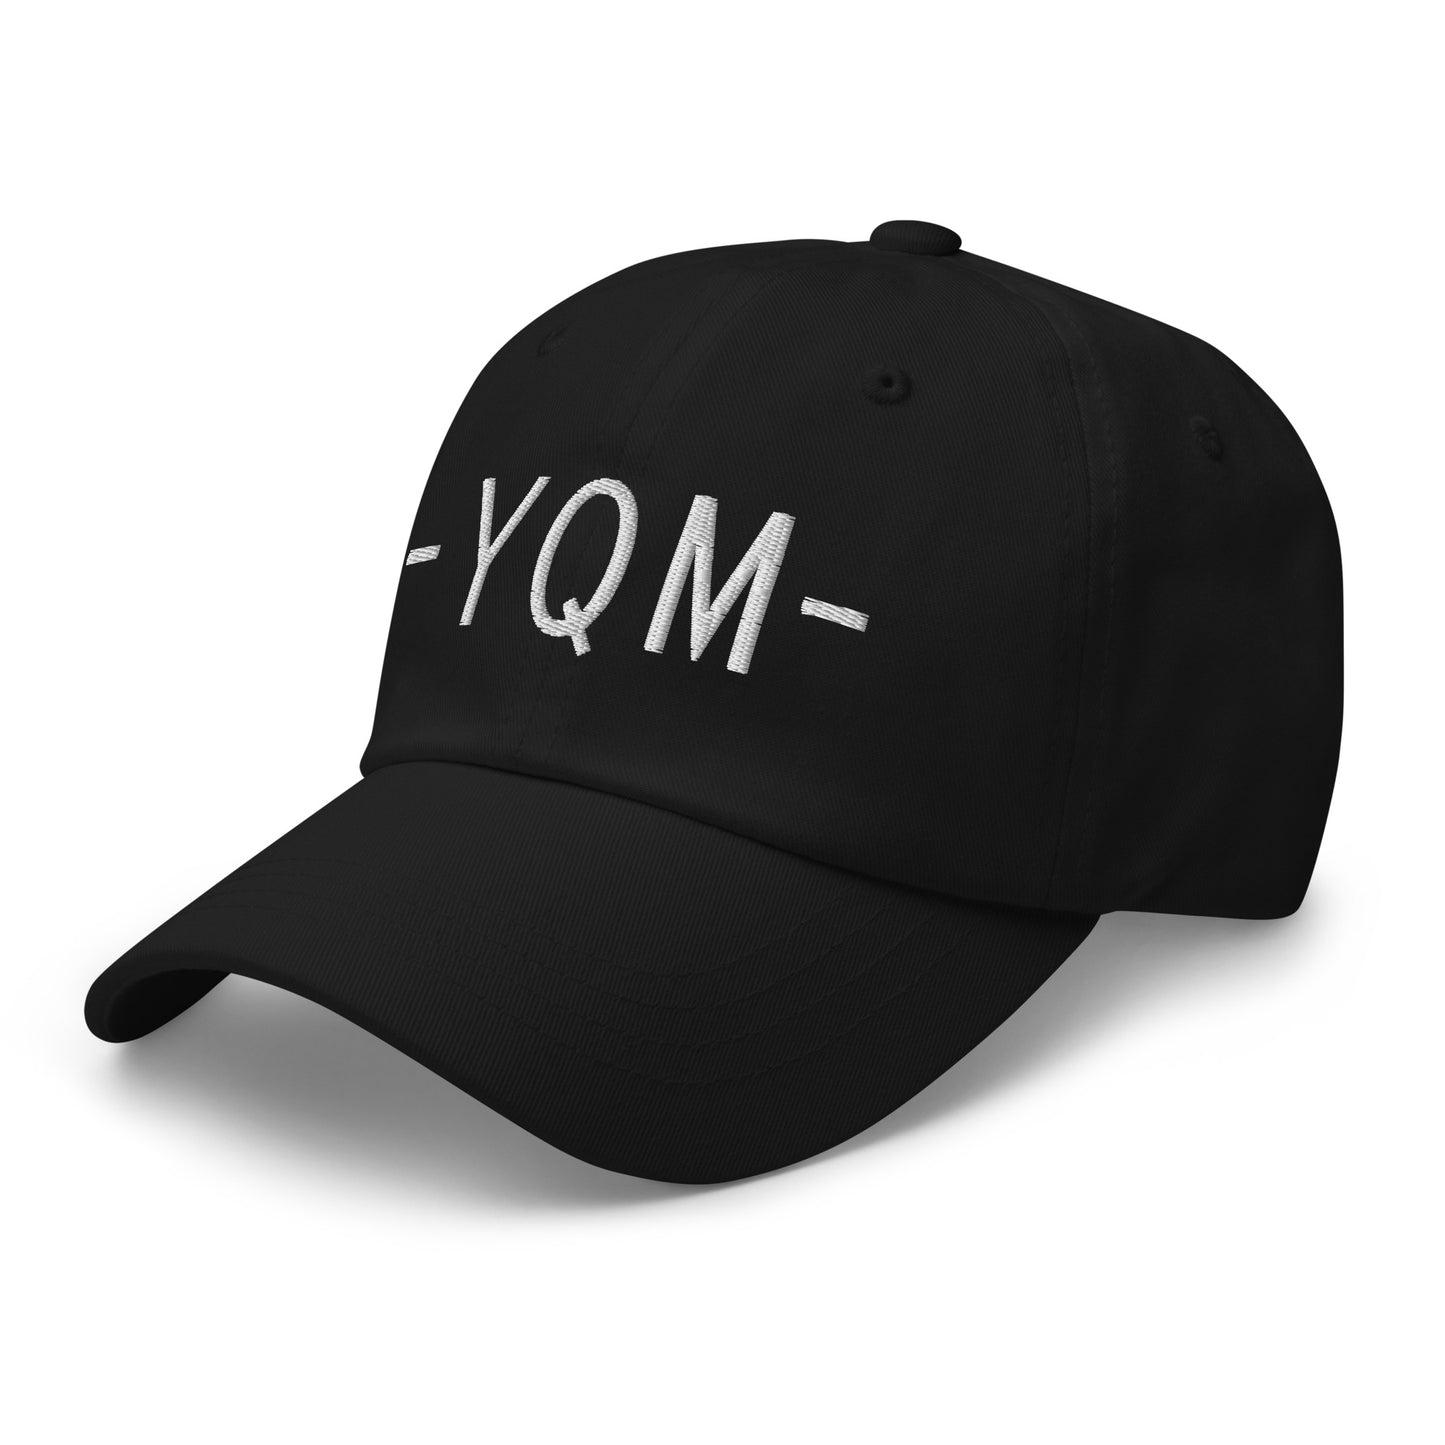 Souvenir Baseball Cap - White • YQM Moncton • YHM Designs - Image 13